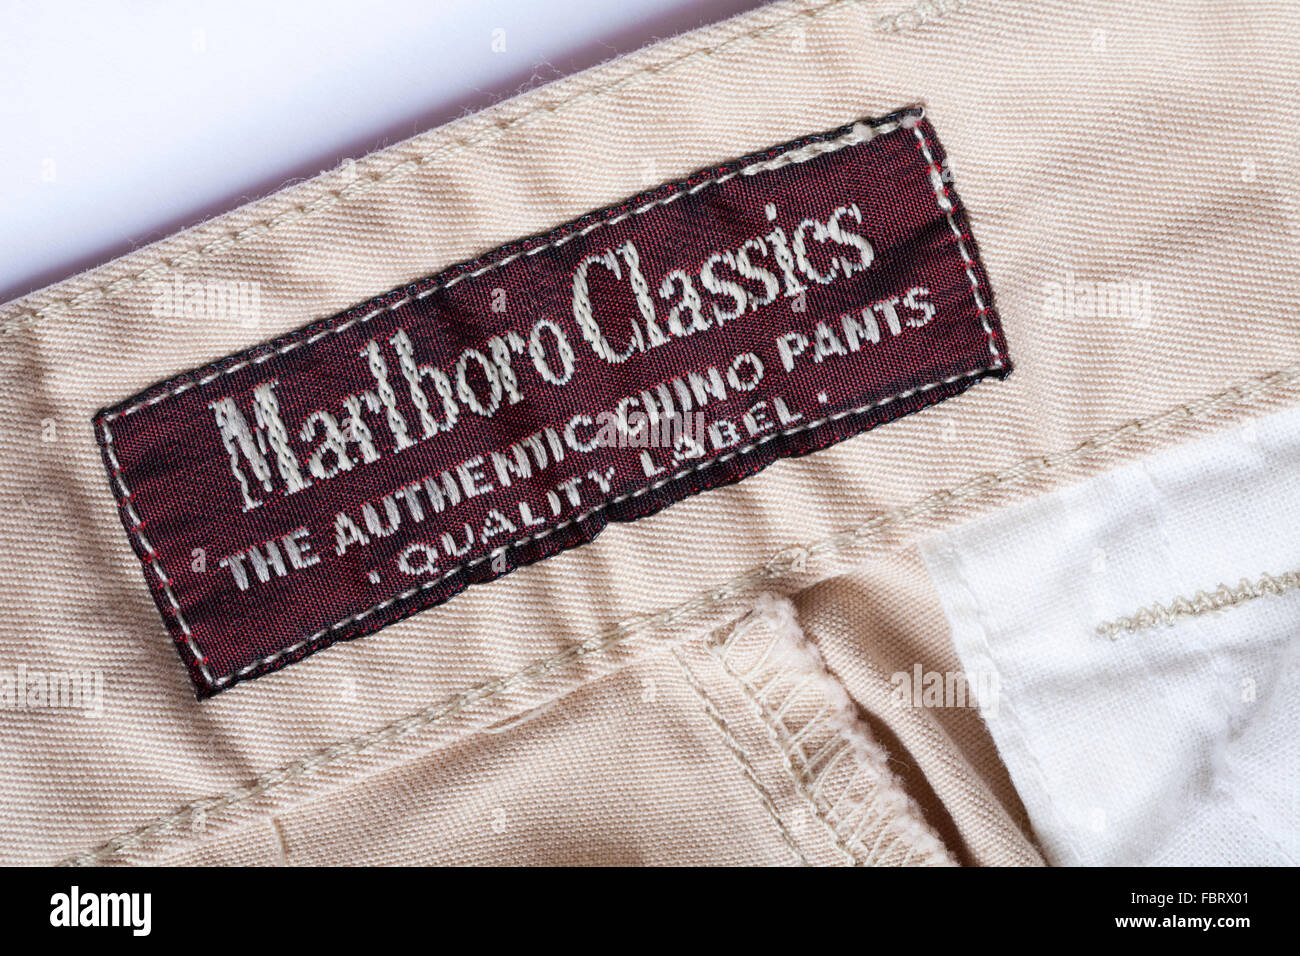 Le label de qualité Marlboro Classics pantalon Chino authentique étiquette  dans mans pantalons Photo Stock - Alamy